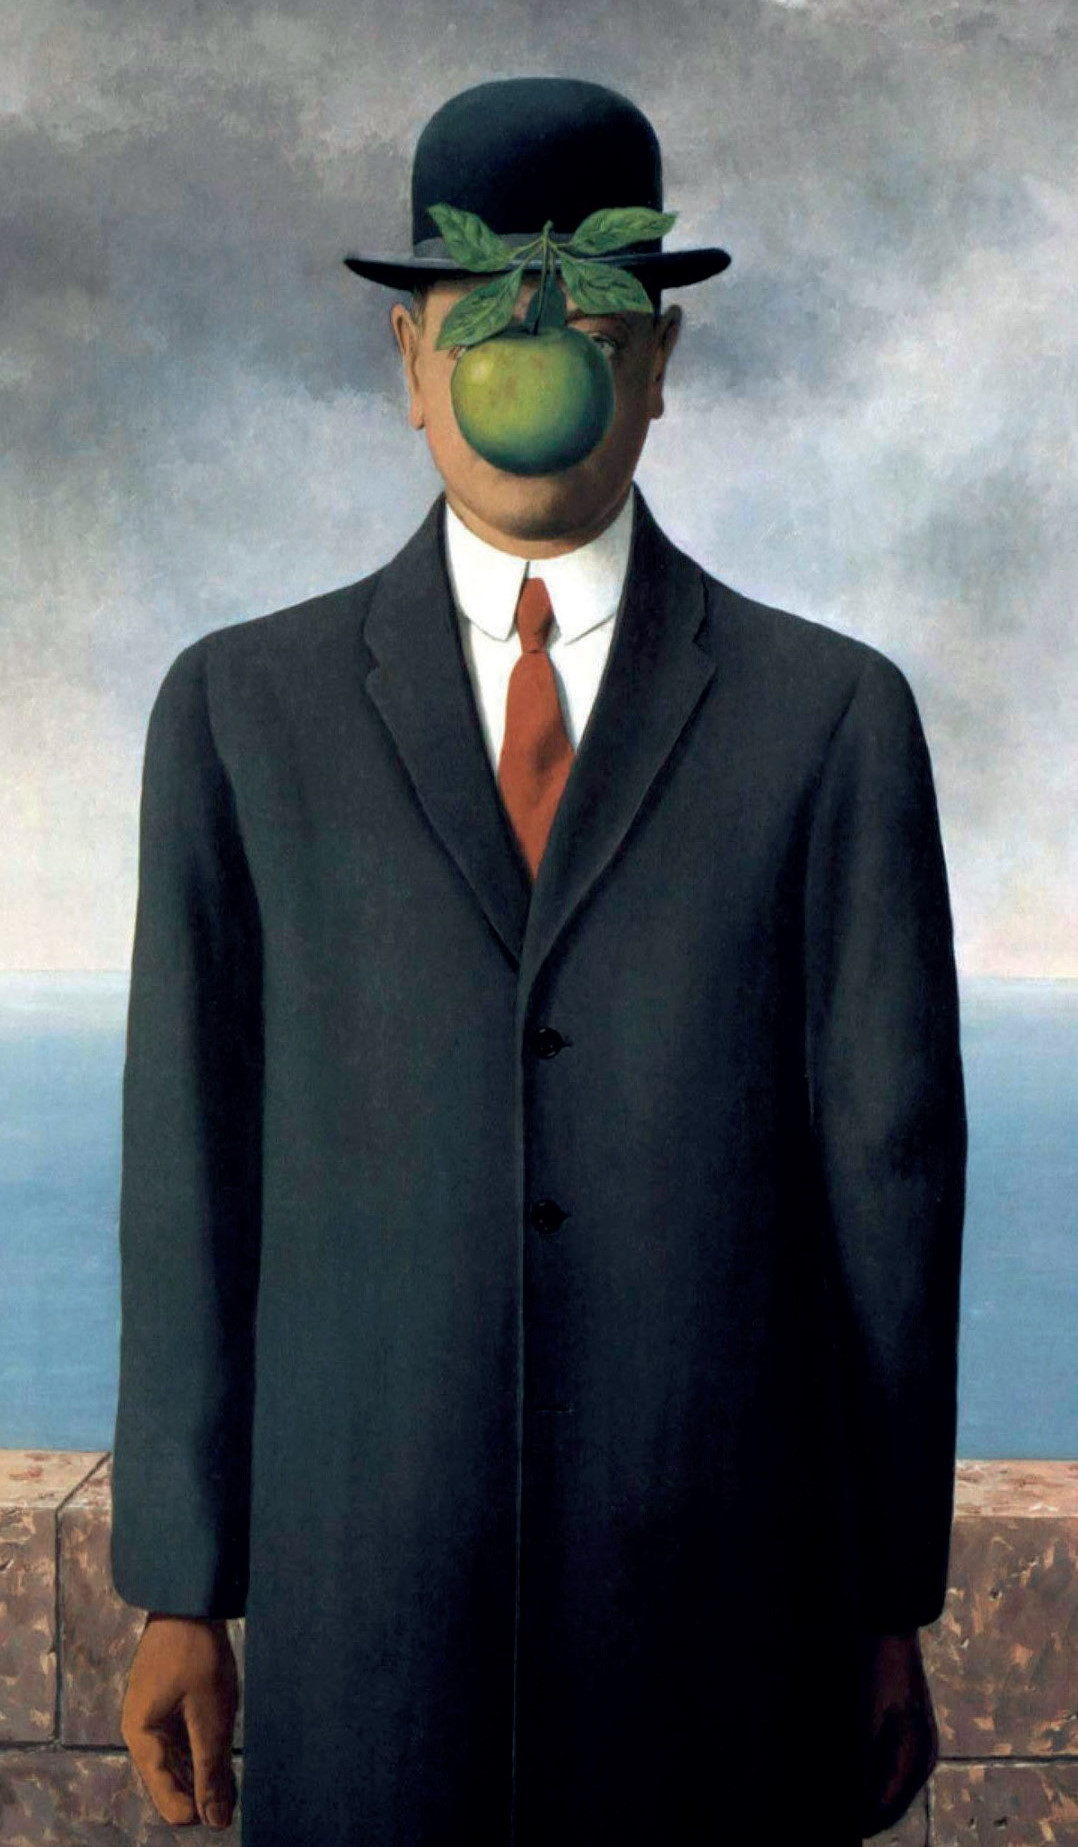 The Son of Man, (Adamın Oğlu), 1964: Melon şapka Magritte’in sembollerinden biridir. Tablolarında sıklıkla gördüğümüz takım elbiseli, melon şapkalı figürleri kimi zaman tek başına, kimi zaman yüzlercesinin yağmur gibi şehre yağdığını görebiliriz.